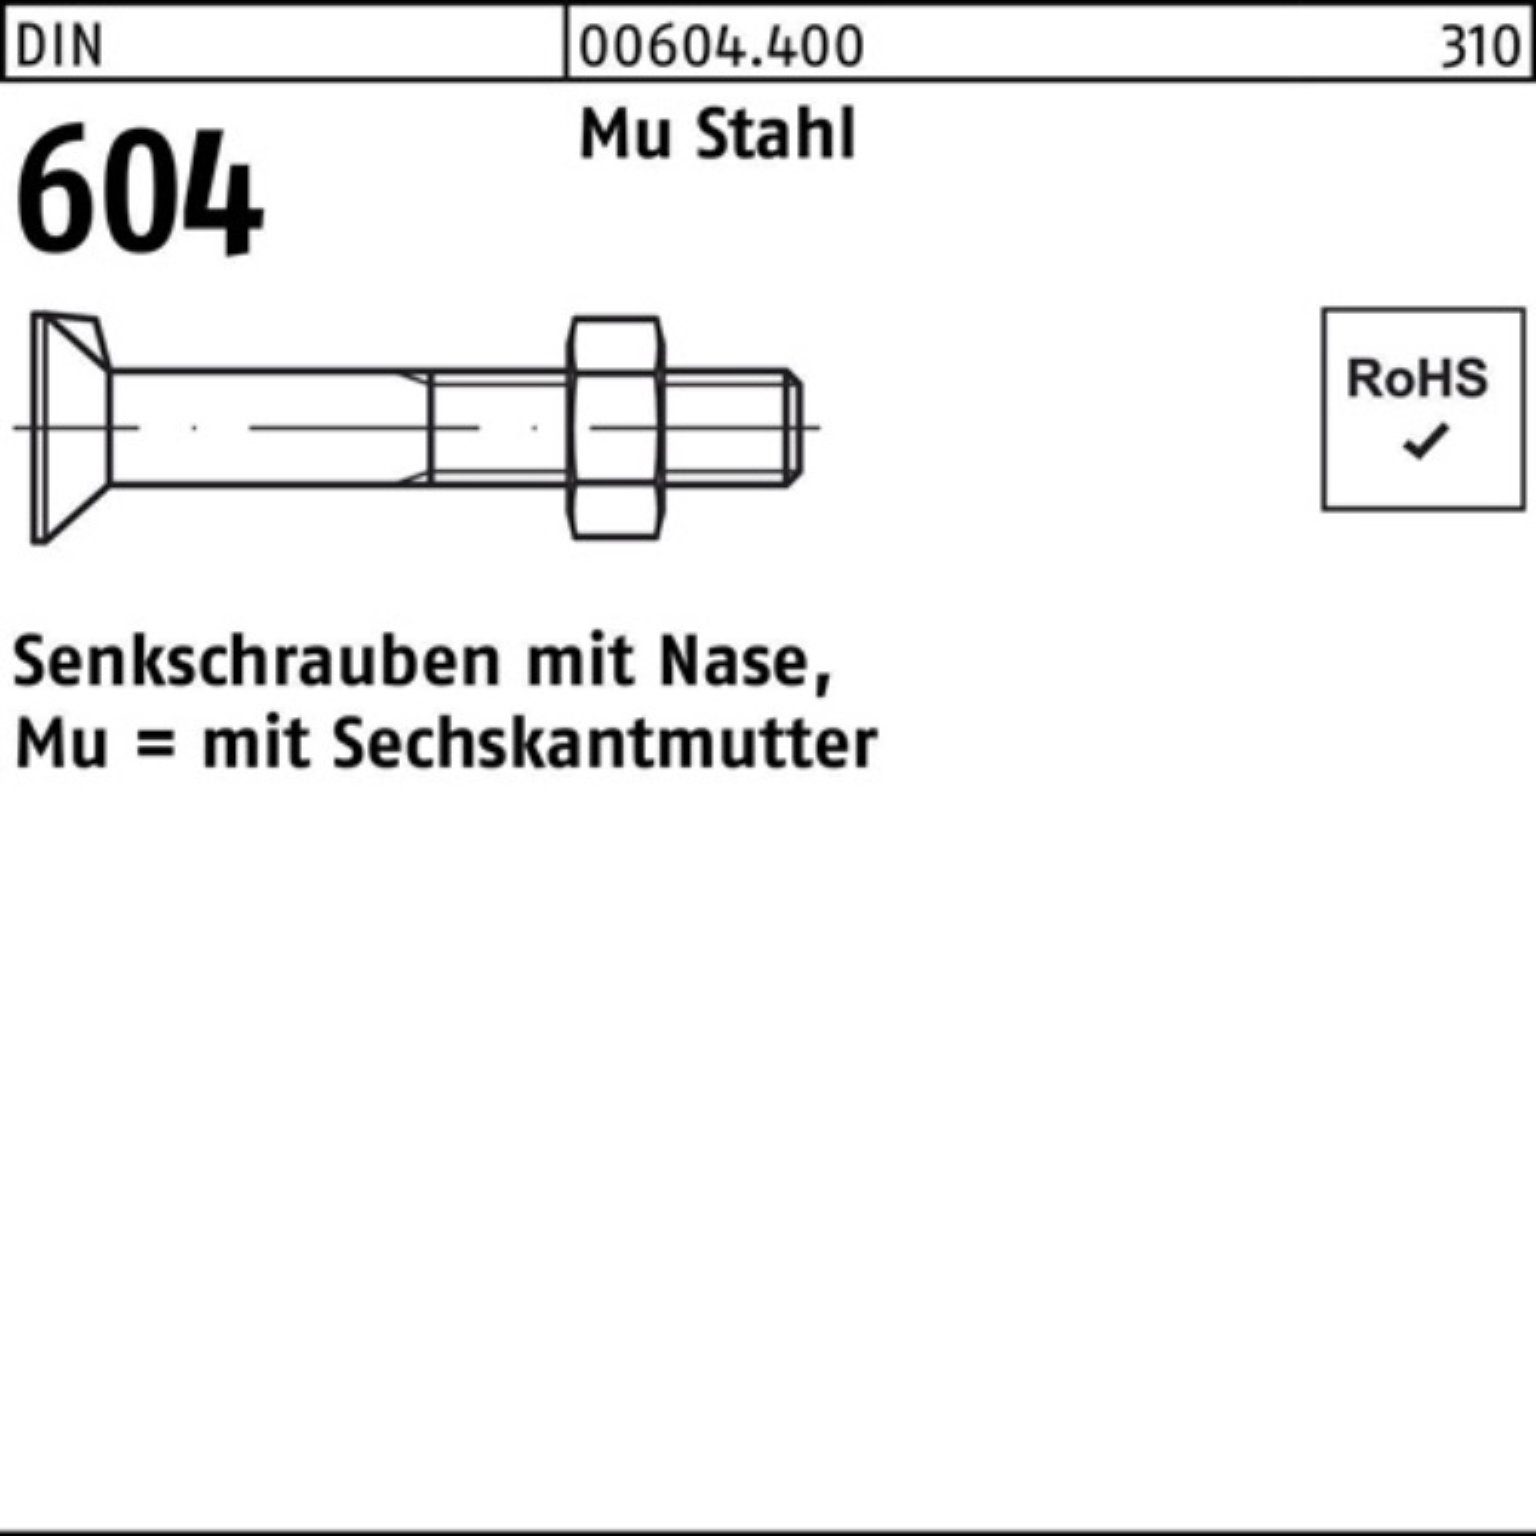 Reyher Senkschraube 200er Pack Senkschraube DIN 604 Nase/6-ktmutter M8x 25 Mu Stahl 4.6 20